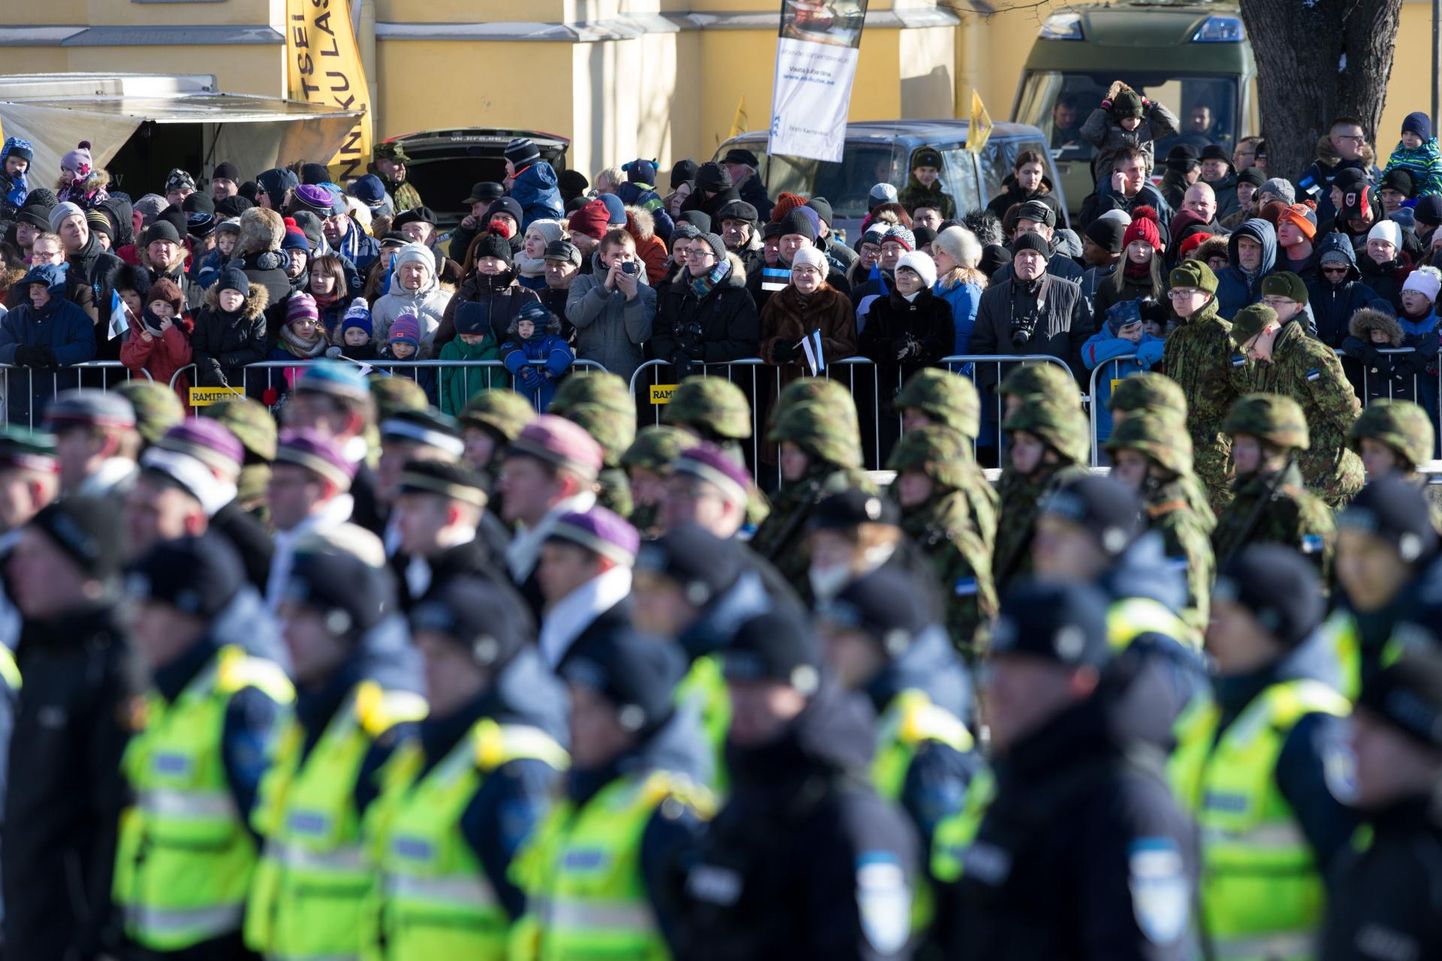 Politsei tähistab Eesti vabariigi aastapäeva pidulike rivistustega. Teisipäeval kell 10 rivistatakse politseinikud üles Rakvere Keskväljakul. Foto on illustratiivne. 